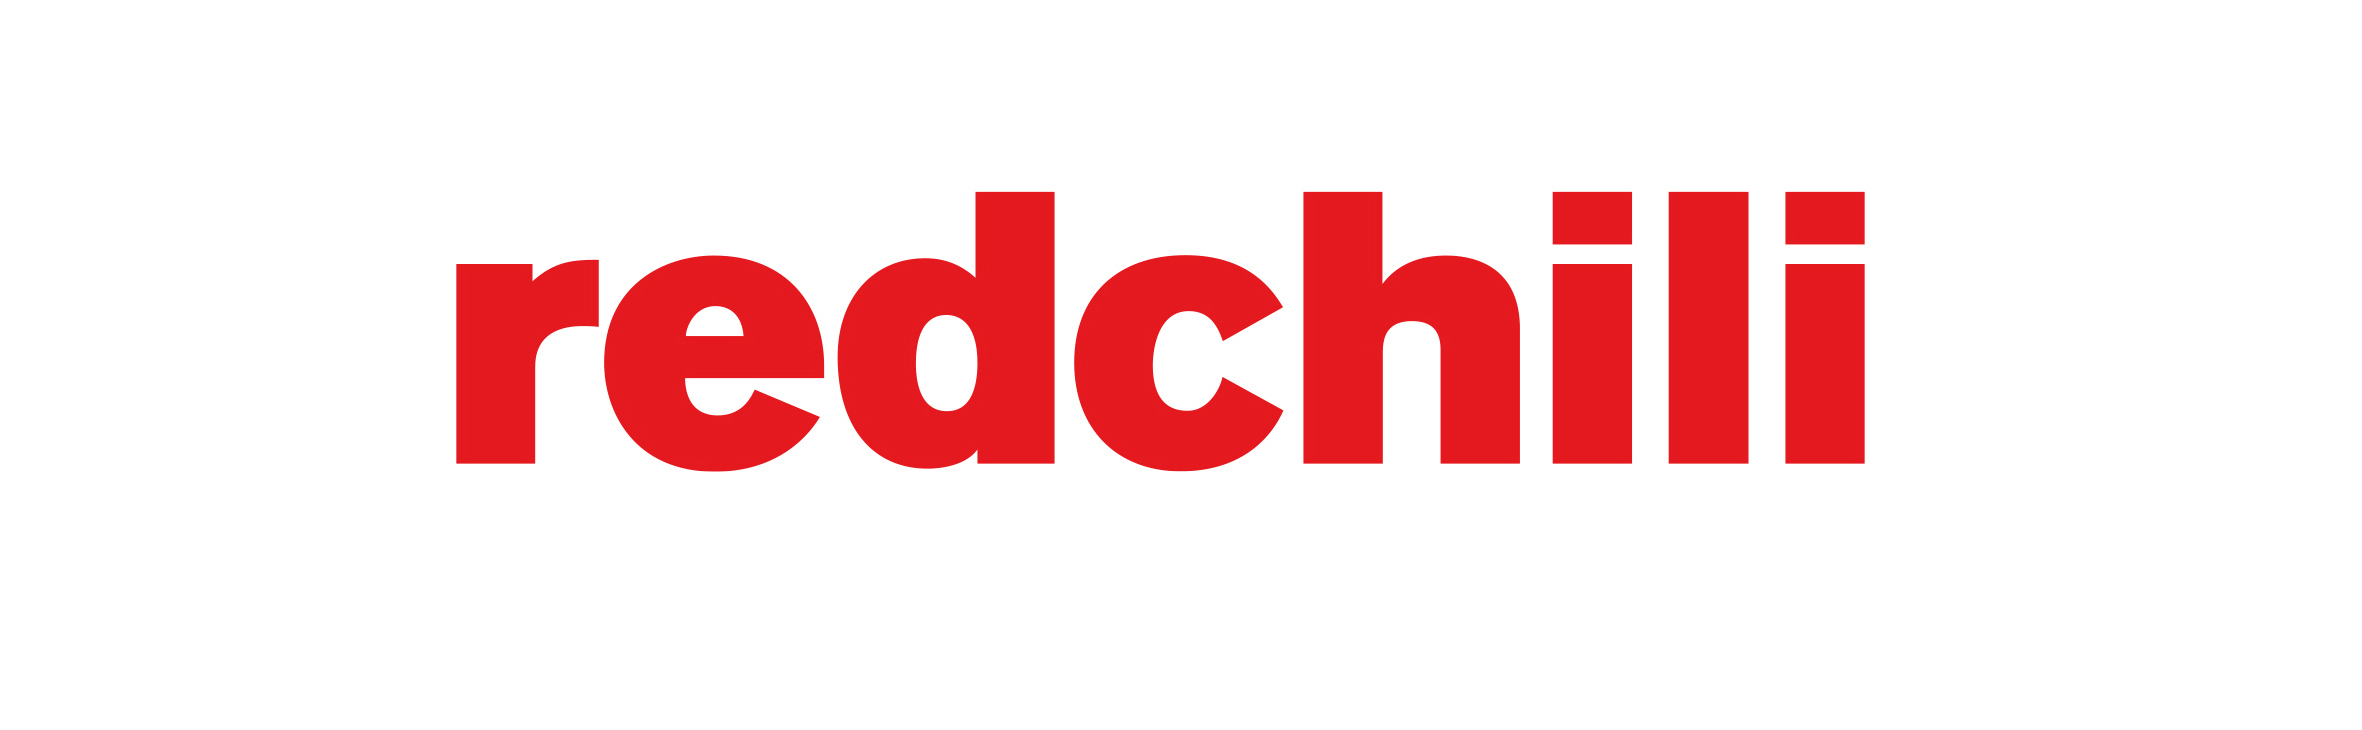 Redchili-logotype.jpg